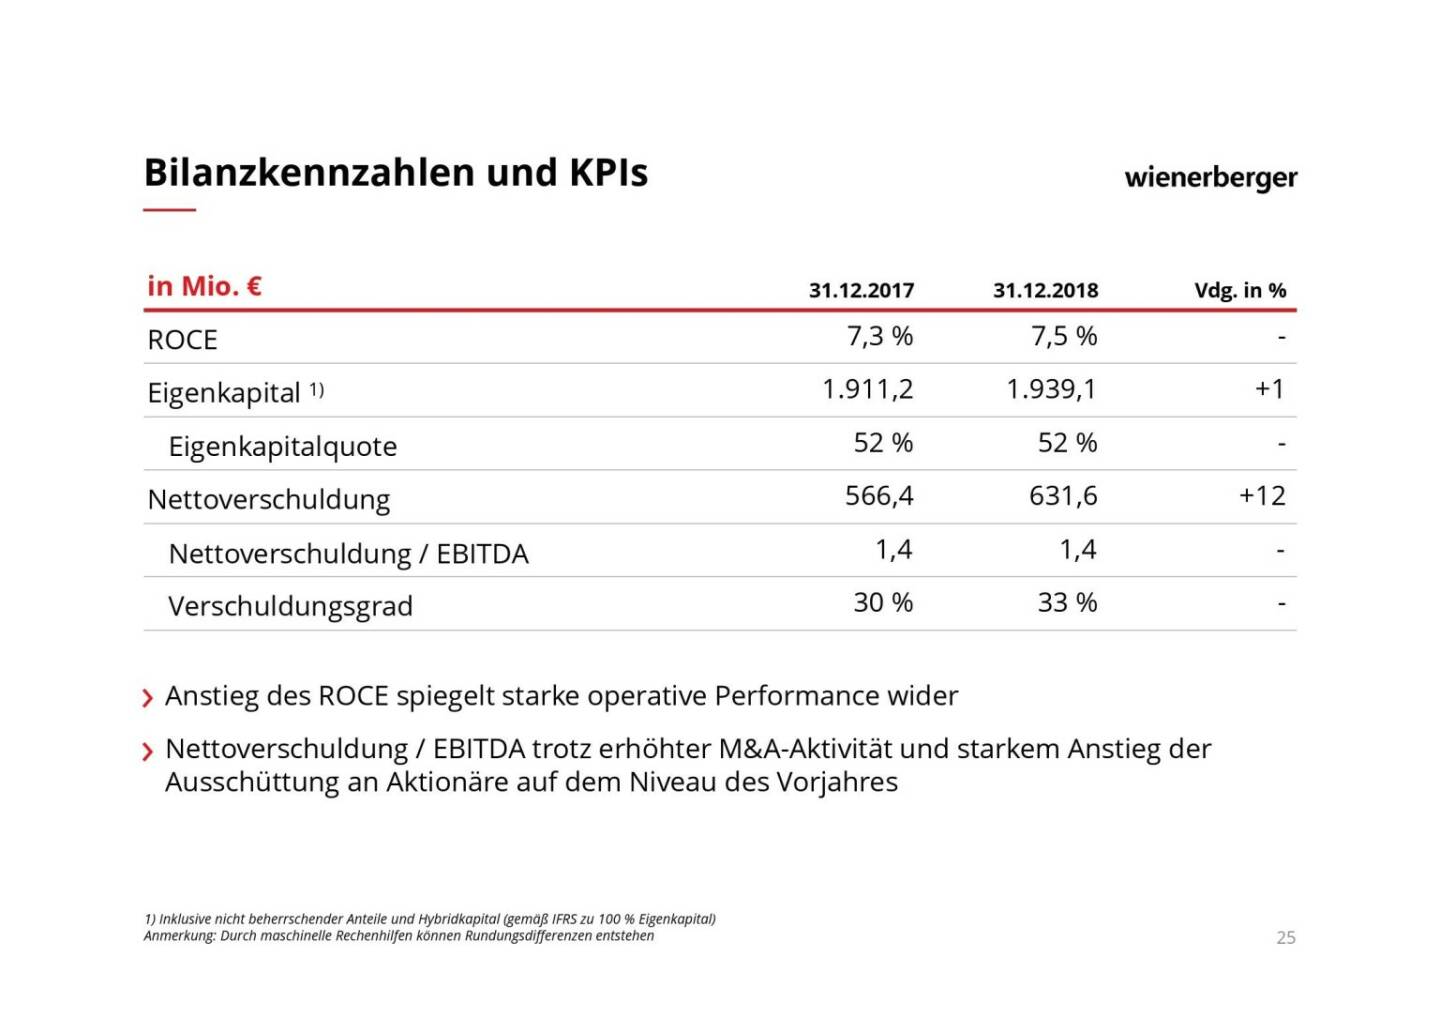 Wienerberger - Bilanzkennzahlen und KPIs